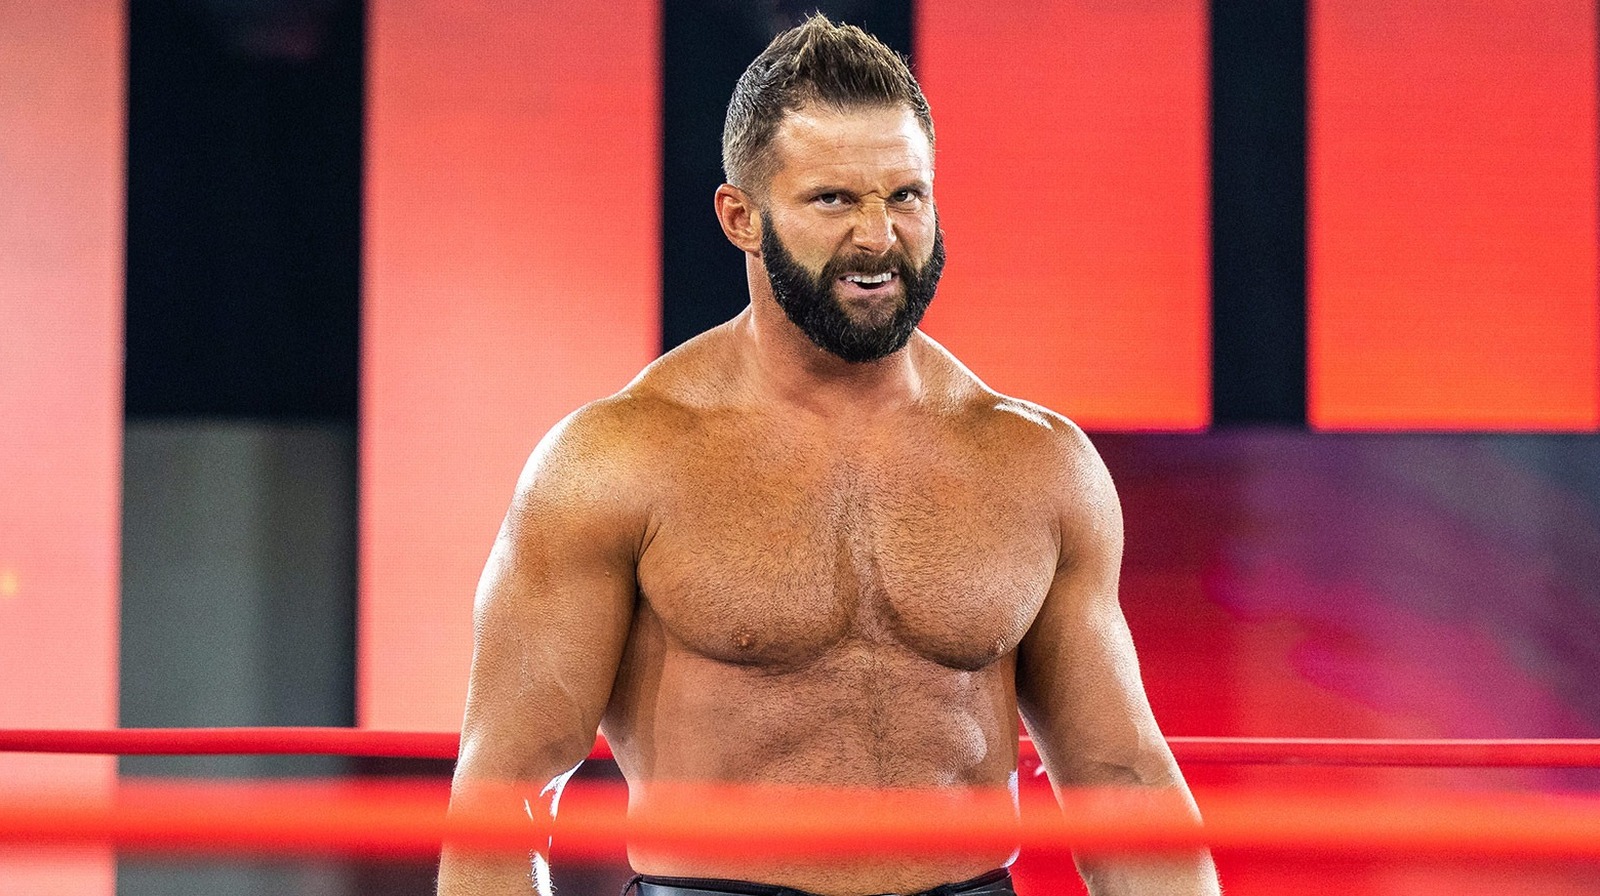 Matt Cardona elmondja gondolatait az Impact Wrestling átnevezéséről TNA-ra